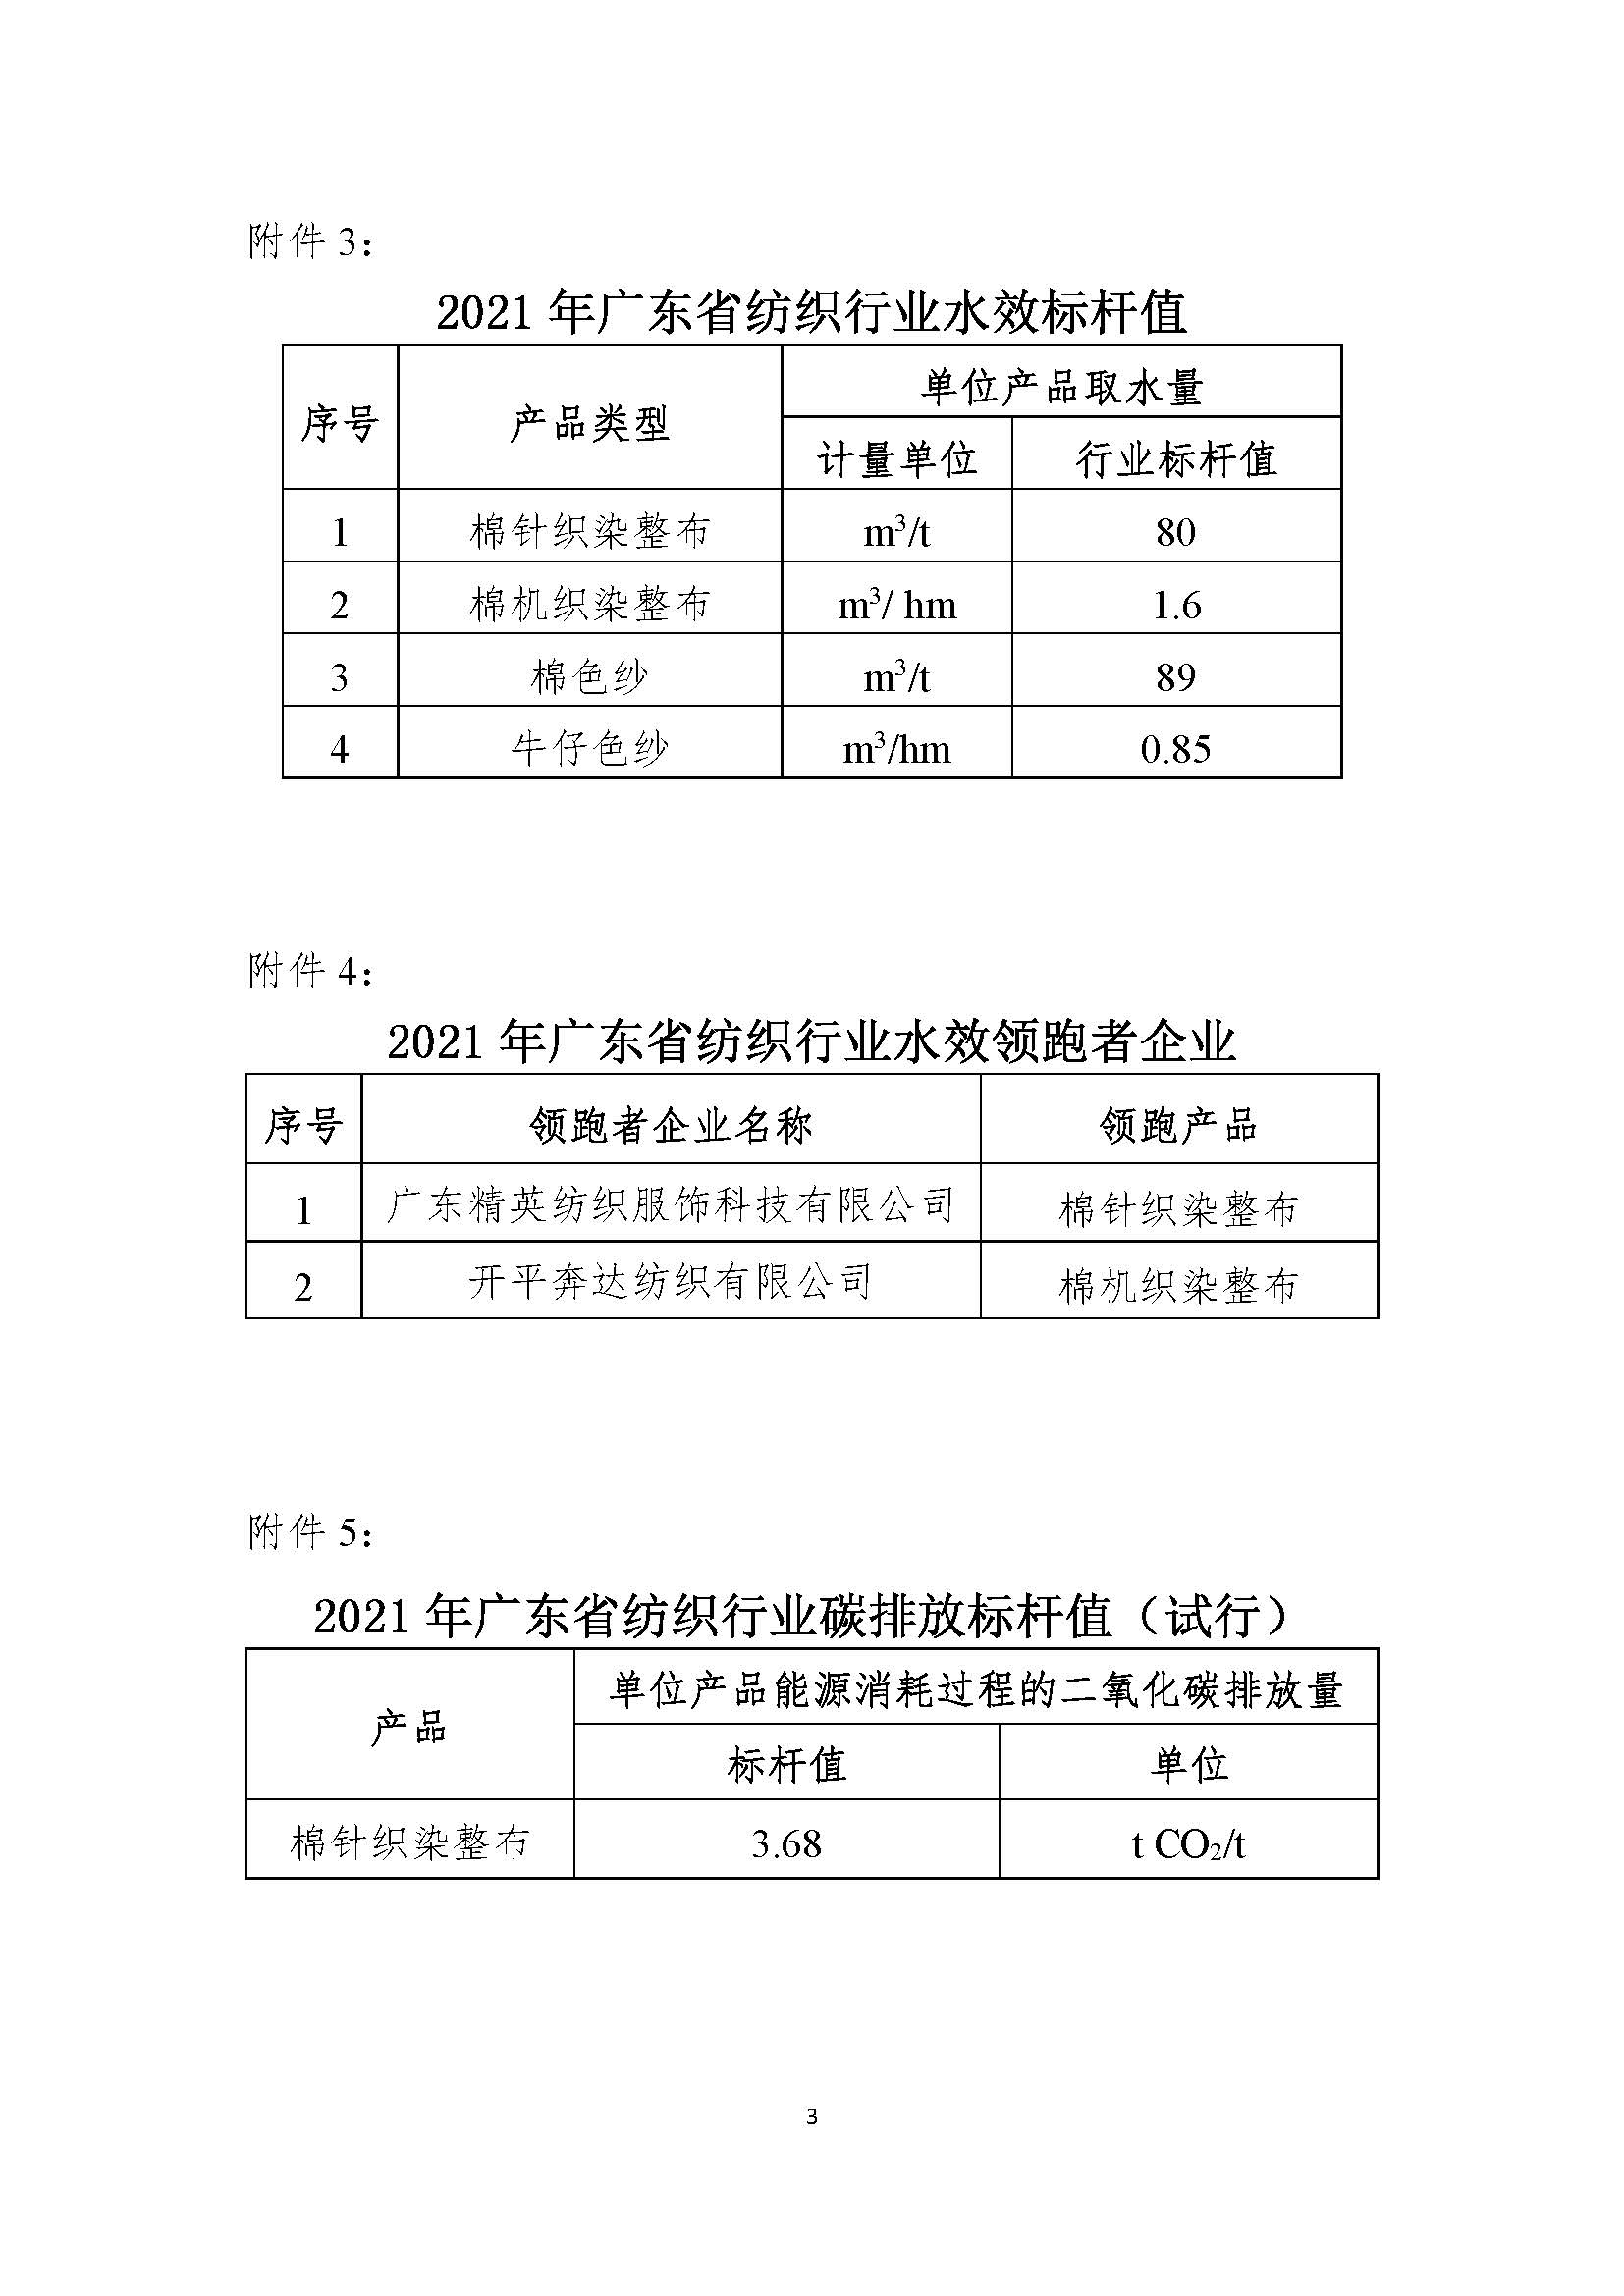 关于2021年广东省纺织行业能效（水效）标杆值和领跑者企业评审结果的公示（2022.9.26）_页面_3.jpg